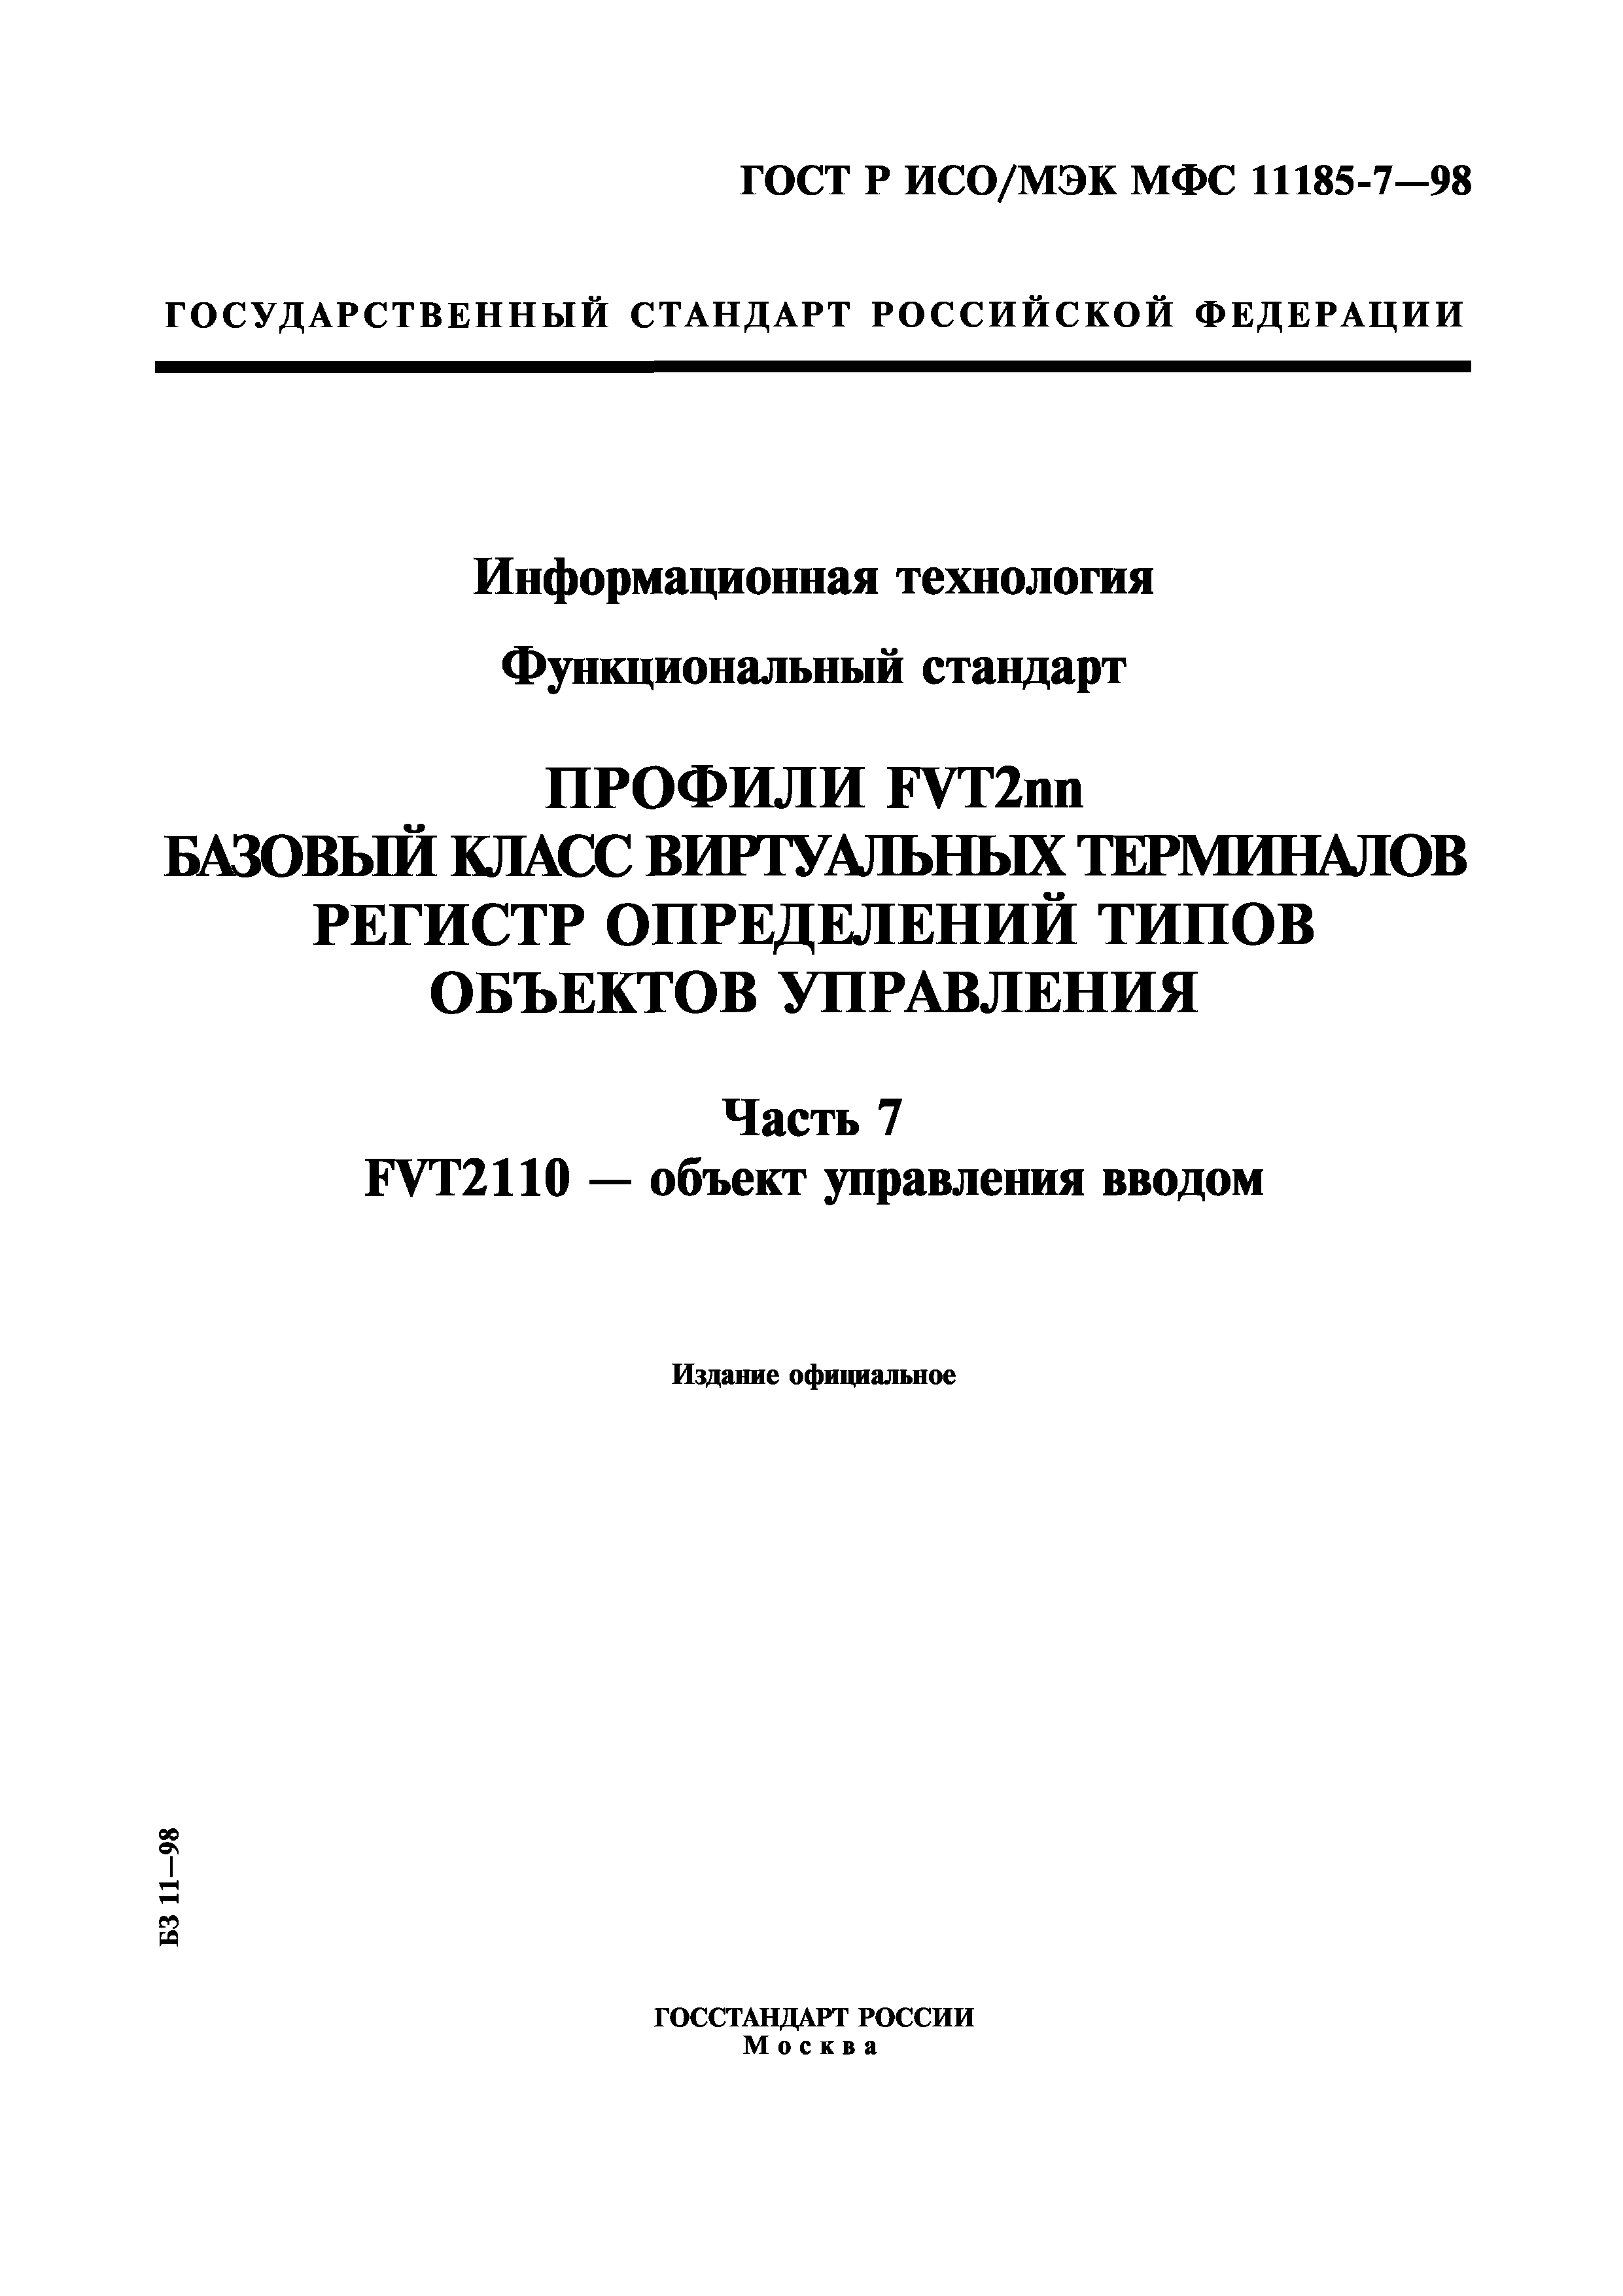 ГОСТ Р ИСО/МЭК МФС 11185-7-98